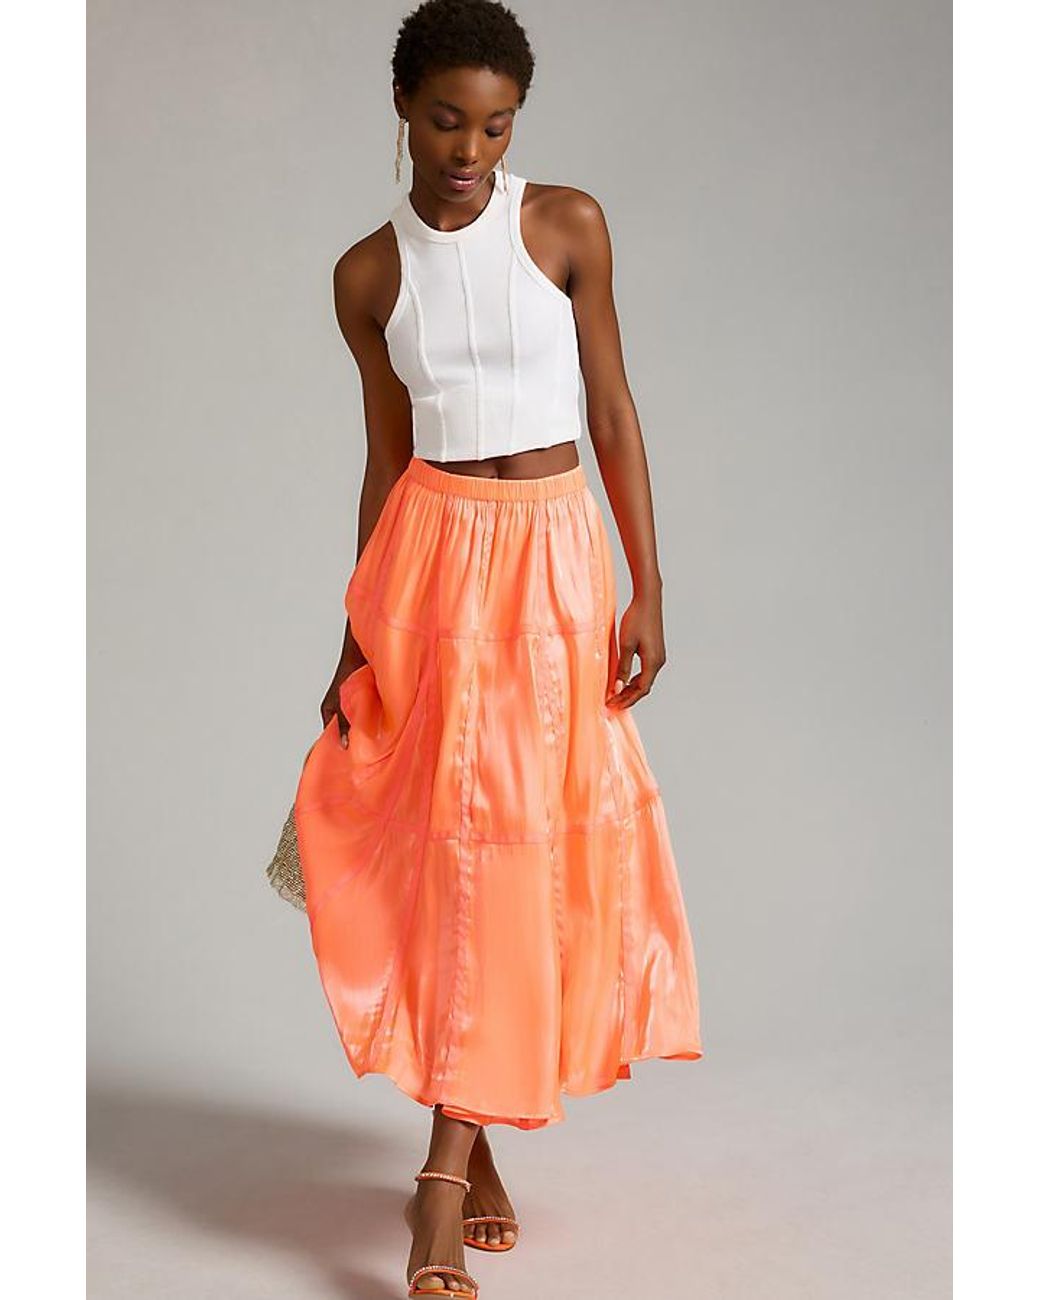 Buy ORANGE SKIRT Tiered Peasant Maxi Skirt Long Skirt Women Online in India   Etsy